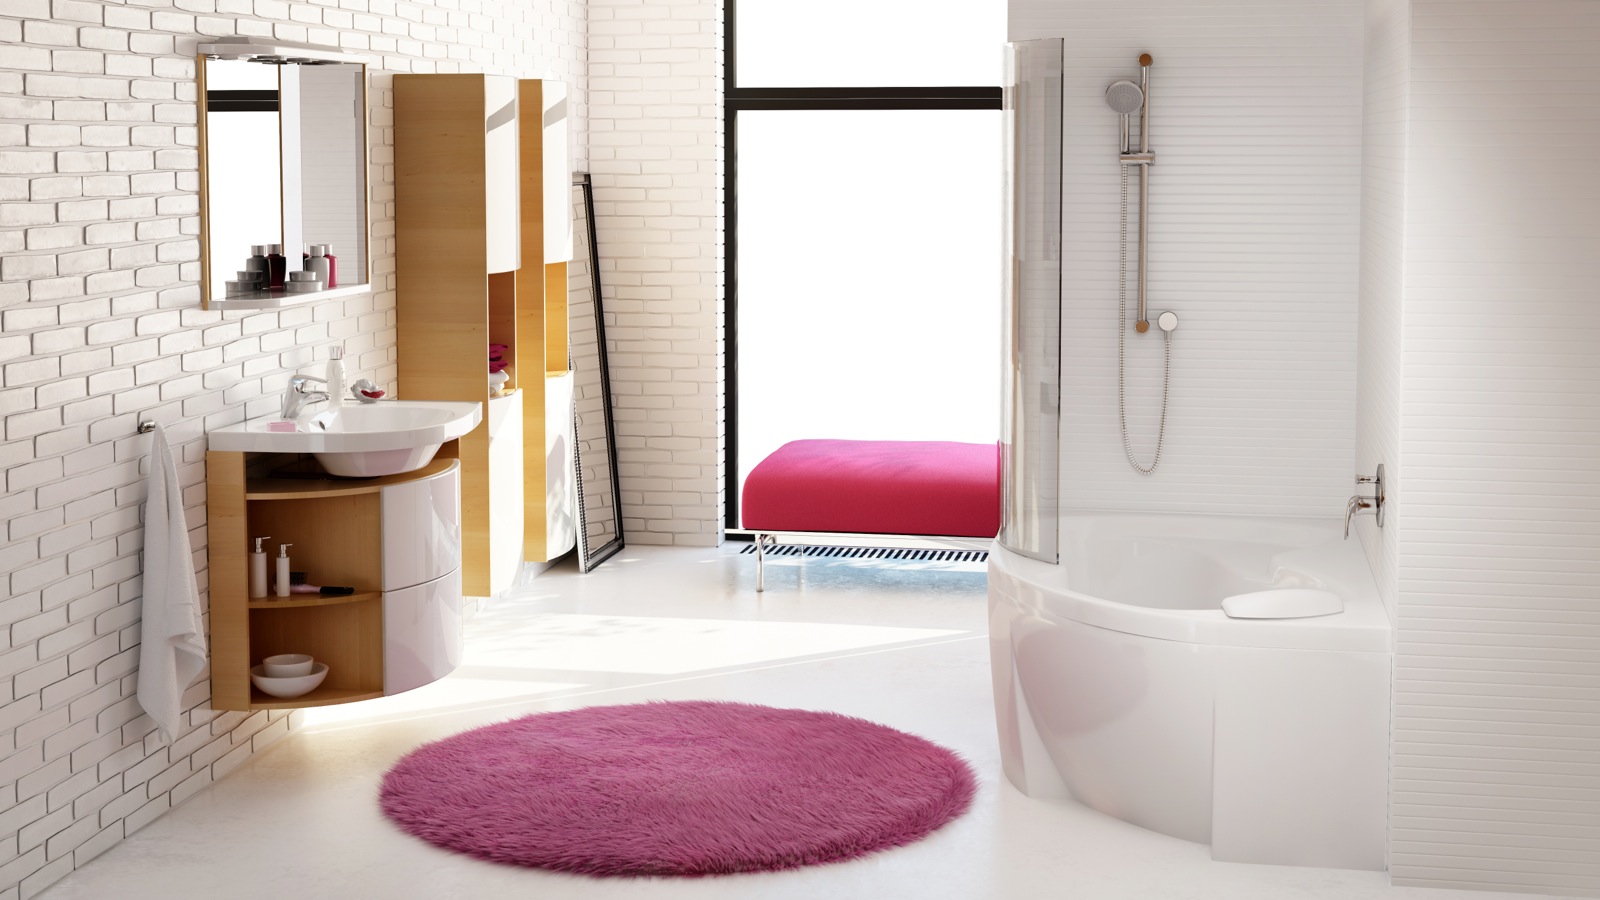 Rosa fürdőszoba koncepciónk barátságosan hívogató, letisztult fürdőszobát varázsol az addig unalmas helyiségből.